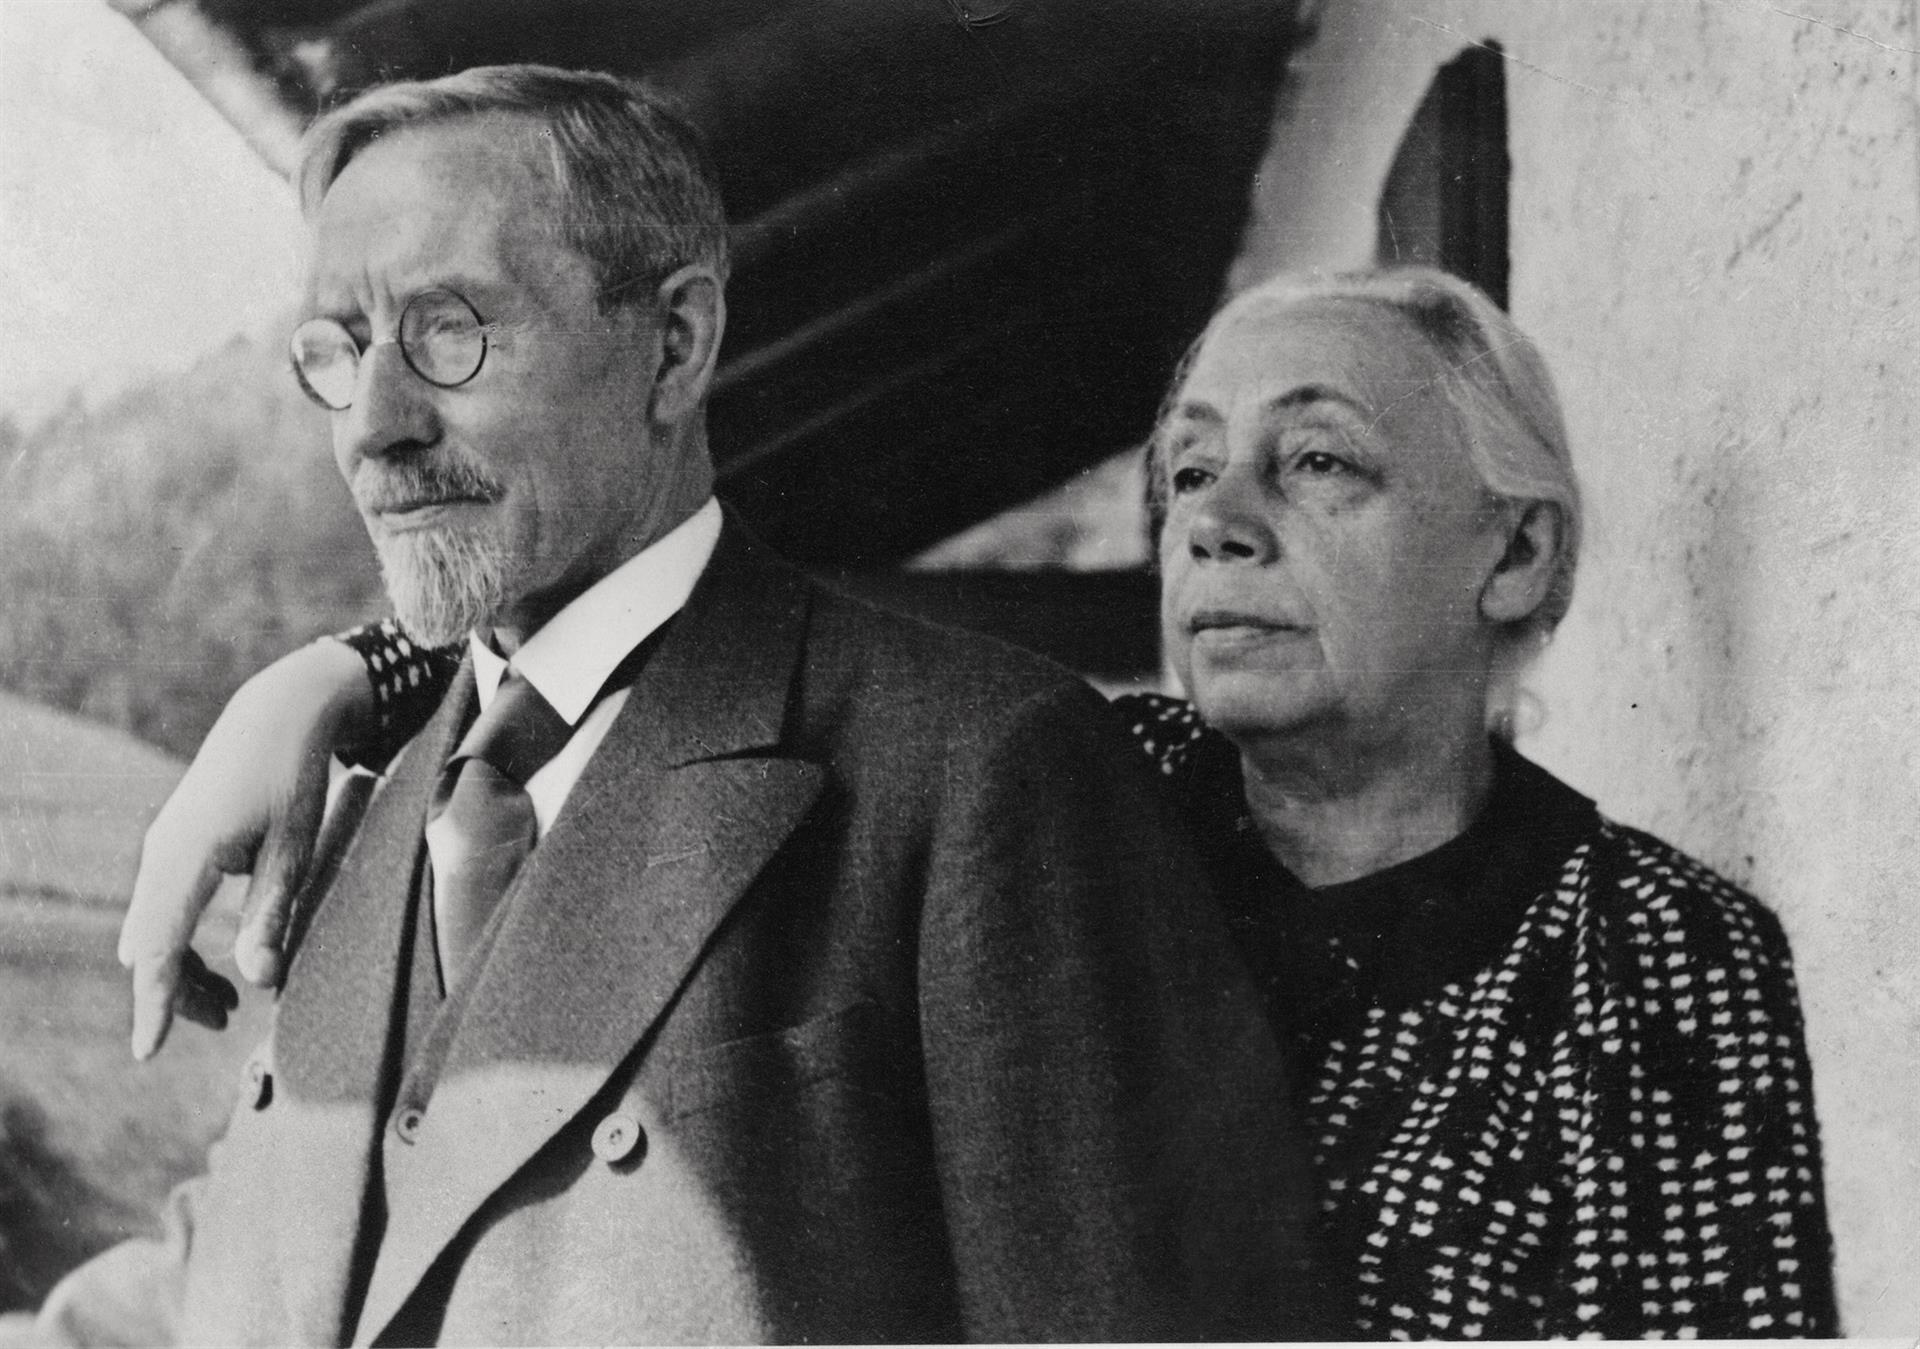 Käthe e Karl Kollwitz, 1933, photographe inconnu, succession Kollwitz © Käthe Kollwitz Museum Köln